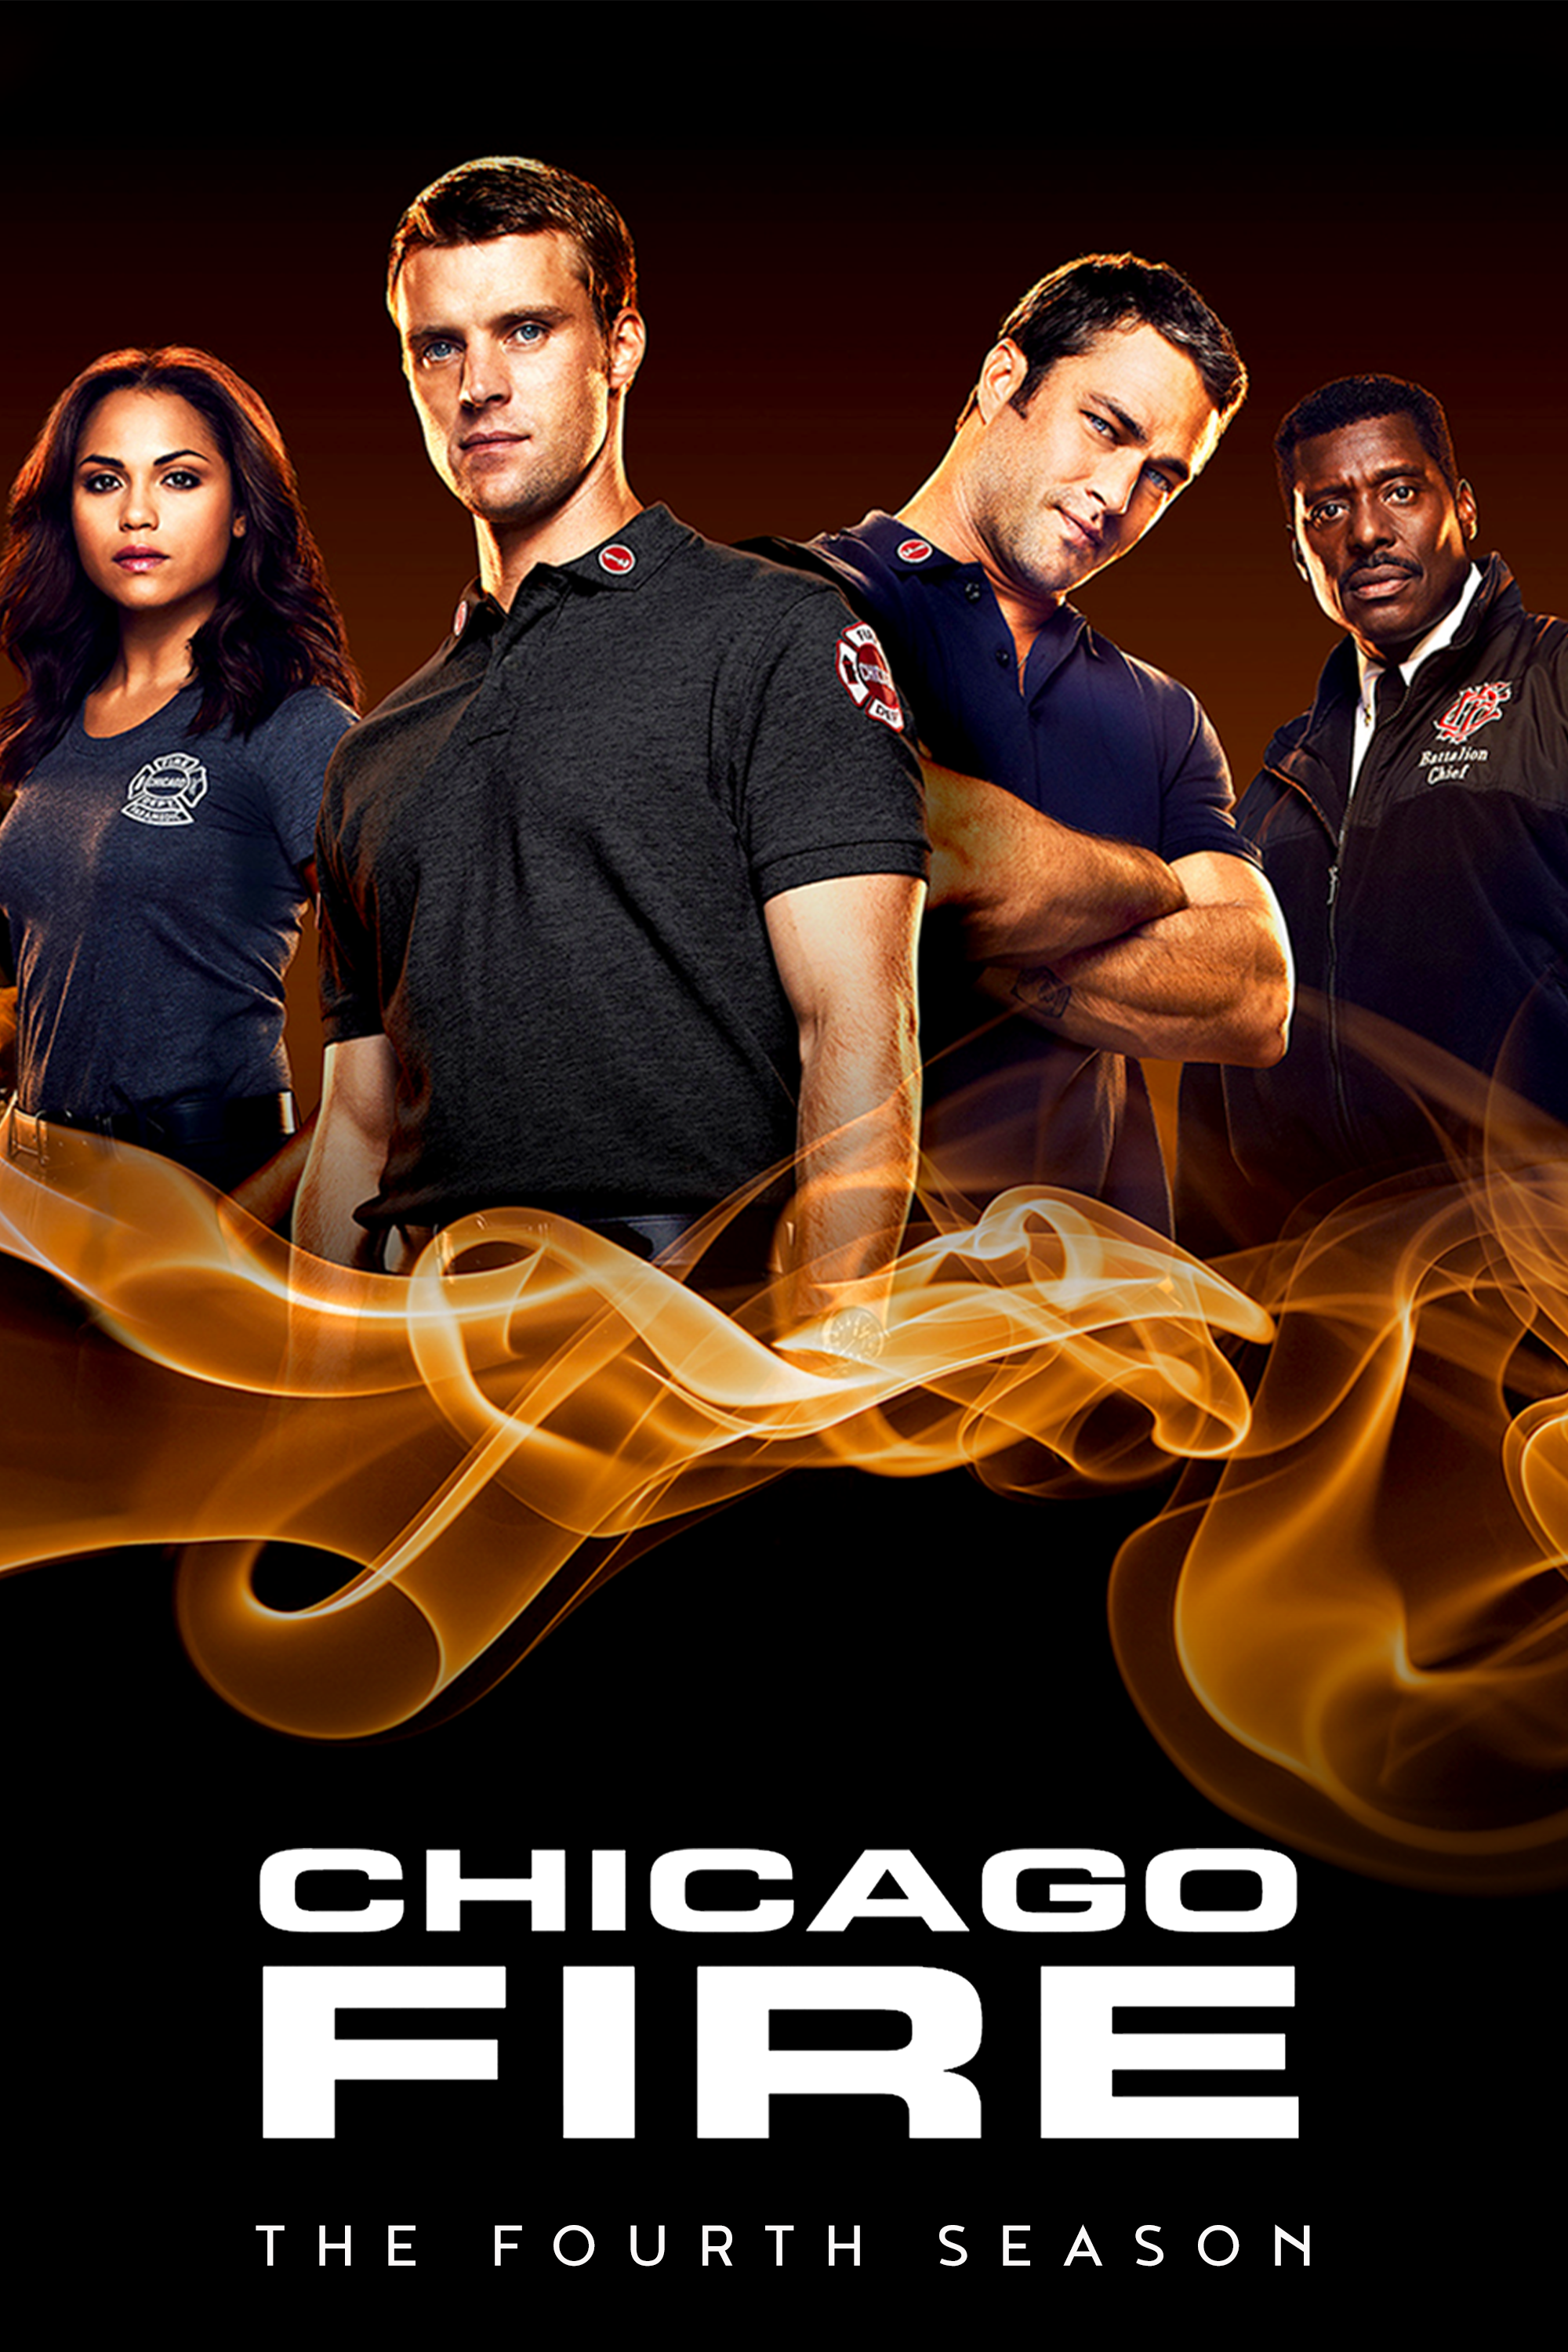 ดูหนังออนไลน์ฟรี Chicago Fire Season 4 EP.5 ชิคาโก้ ไฟร์ หน่วยดับเพลิงท้านรก ซีซั่นที่ 4 ตอนที่ 5